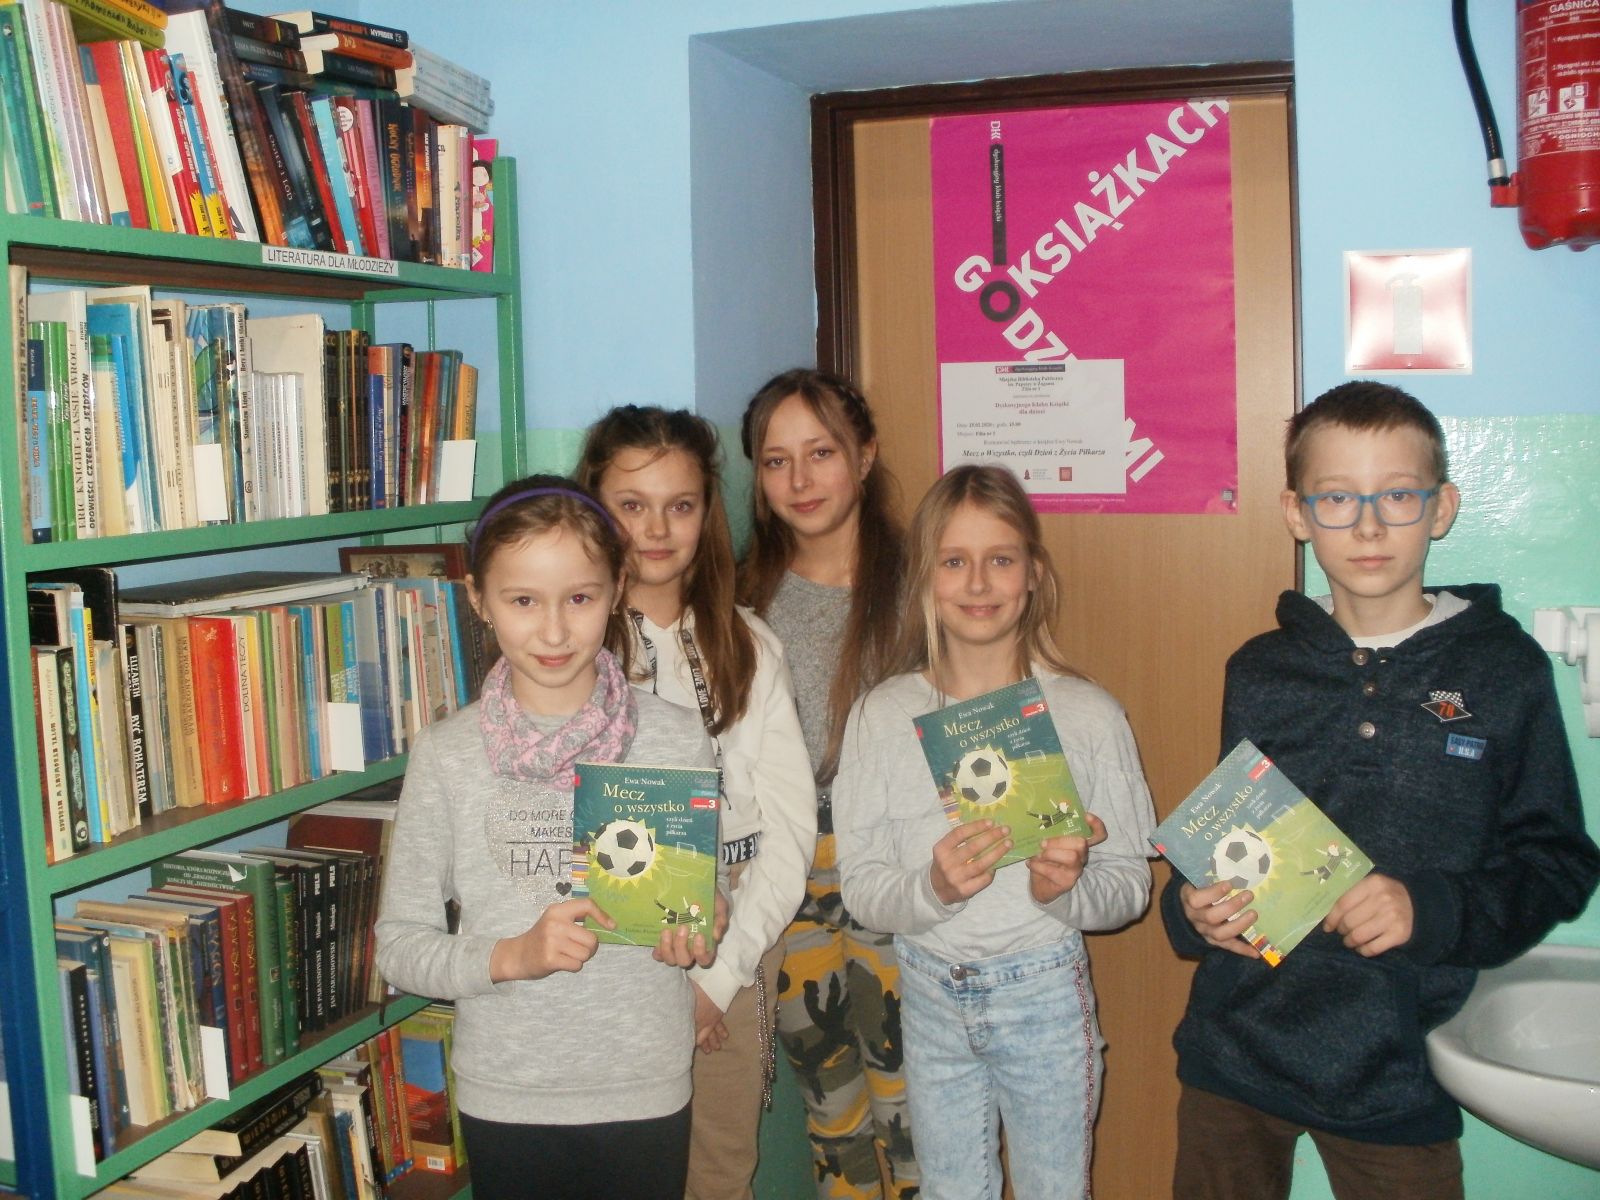 Zdjęcie. Na tle zielonego regału z książkami i plakatu Godzinami o książkach pozuje pięcioro uśmiechniętych dzieci trzymających przeczytaną książkę.